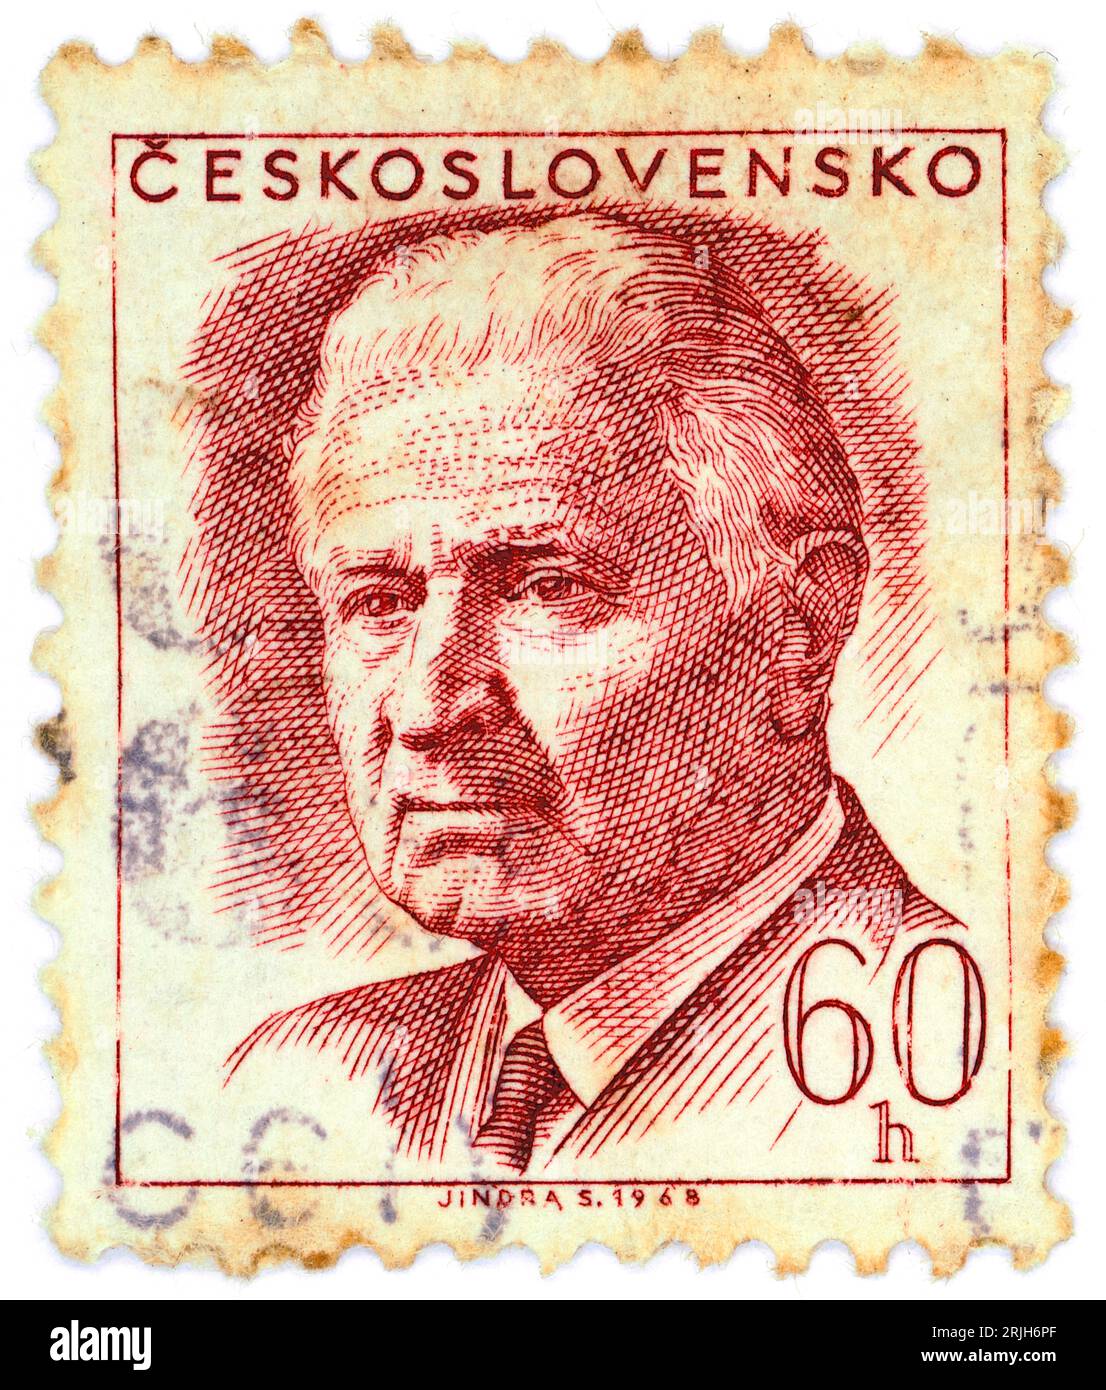 Ludvík Svoboda (1895 – 1979). Francobollo emesso in Cecoslovacchia nel 1968. Ludvík Svoboda è stato un generale e politico ceco. Combatté in entrambe le guerre mondiali, per le quali fu considerato un eroe nazionale, e in seguito fu presidente della Cecoslovacchia dal 1968 al 1975. Foto Stock